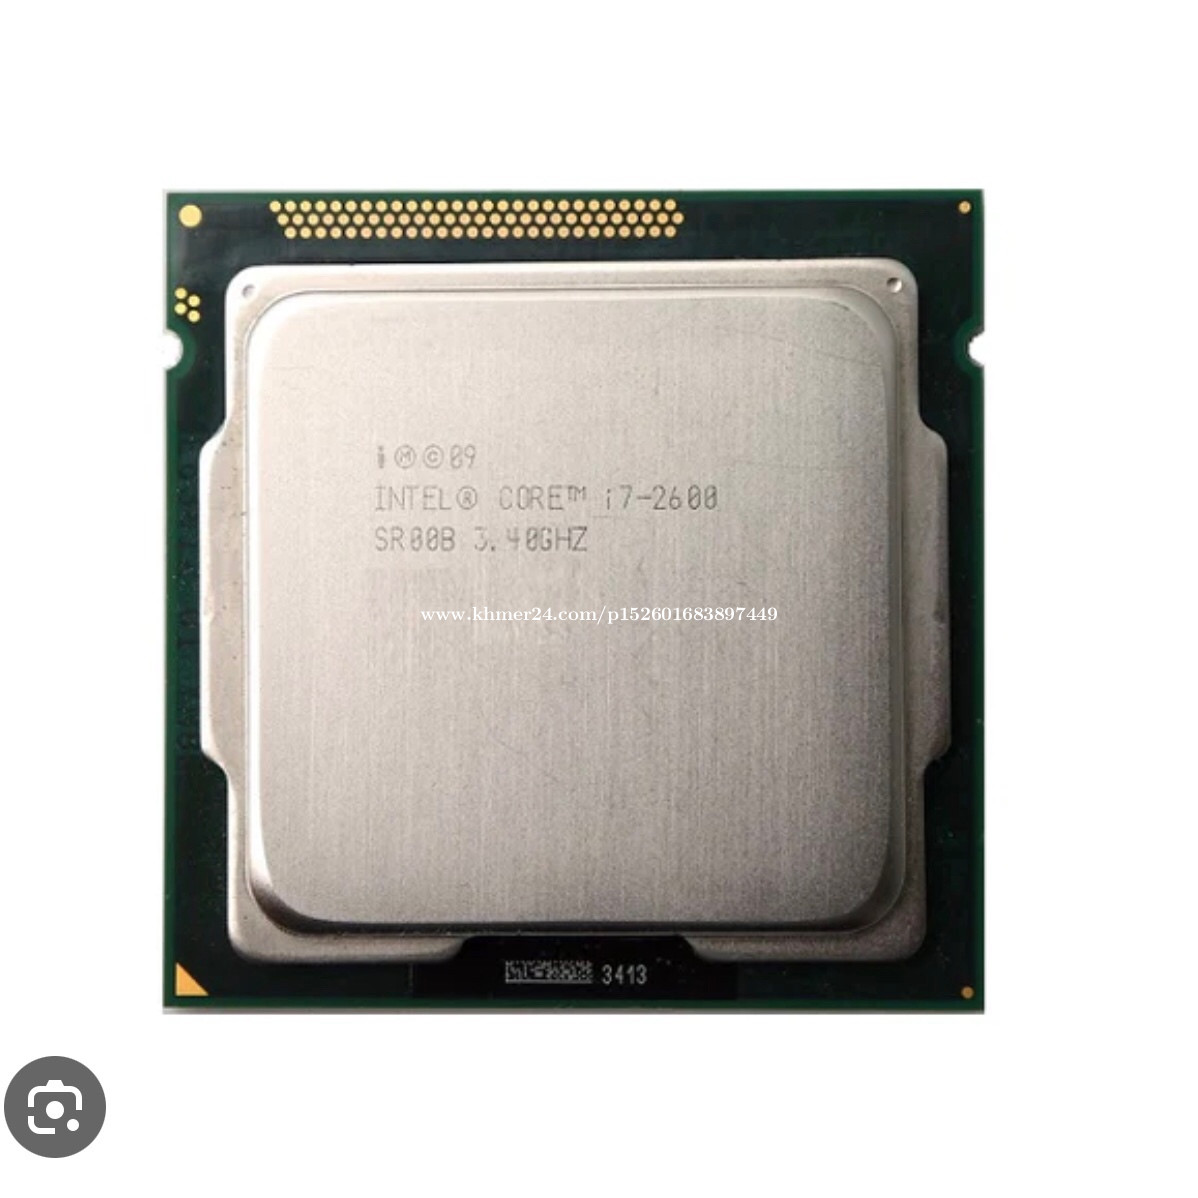 cpu intel core i7-2600 - CPU